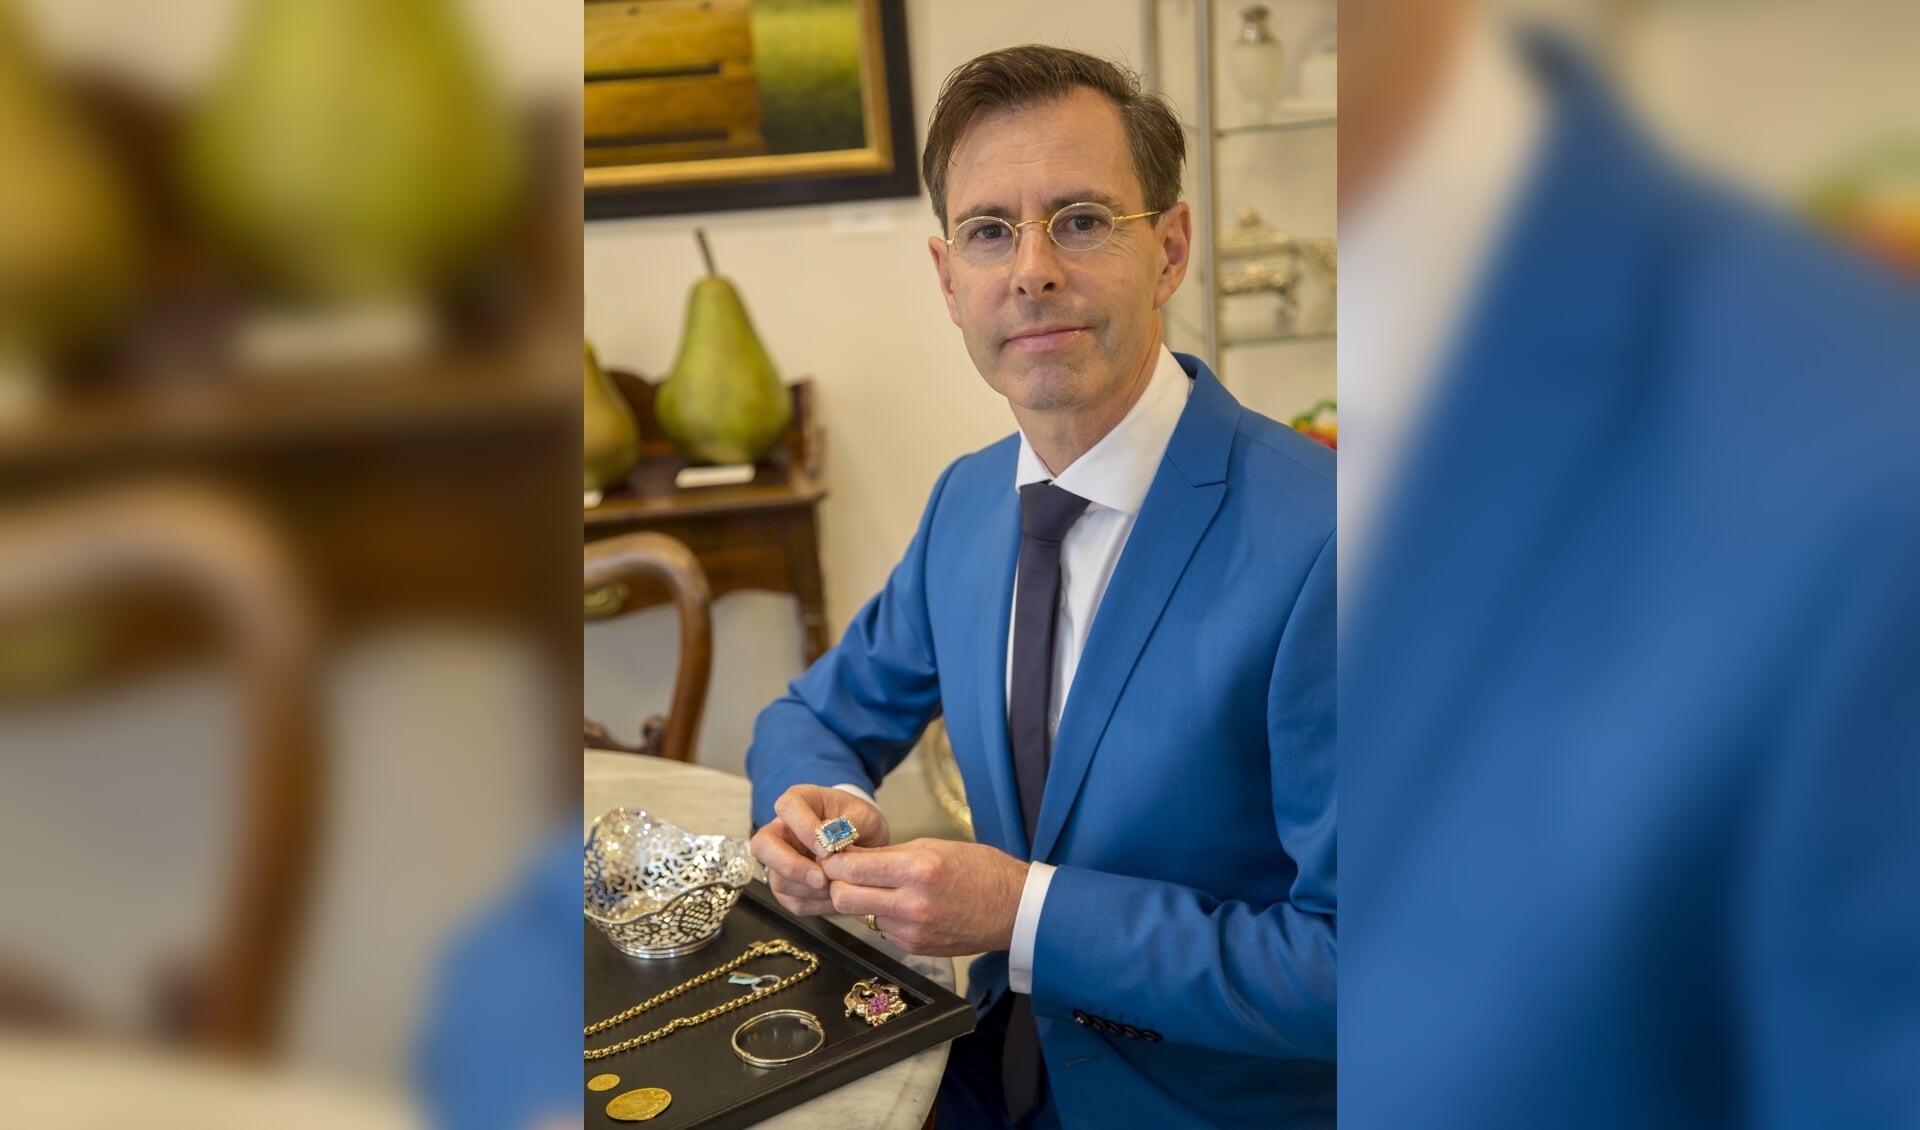 Chris van Waes, Juwelier, Antiquair